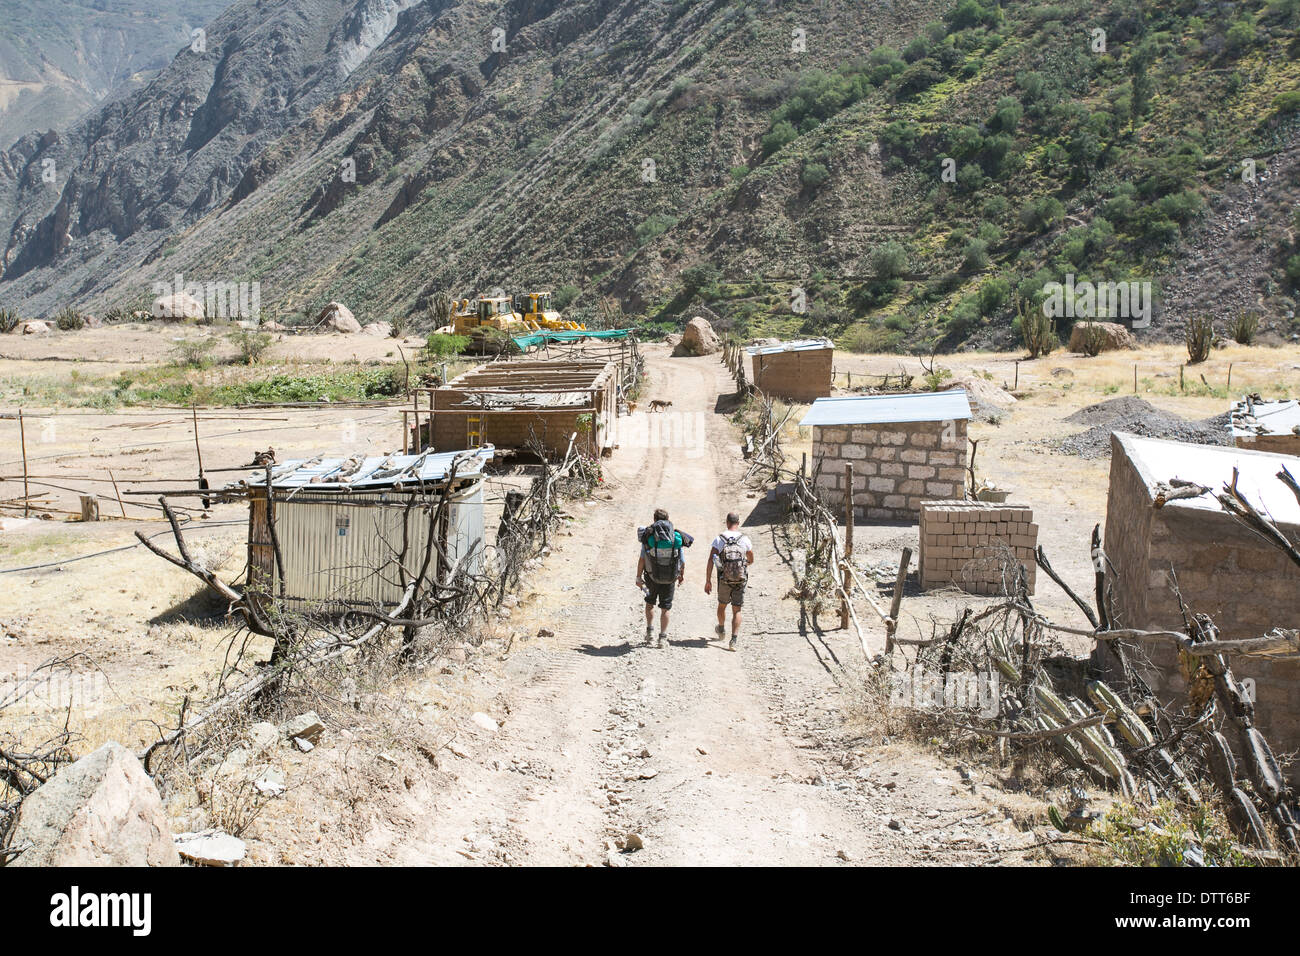 Il trekking all'interno del canyon de colca in Perù, cabanaconde, giorno asciutto di polvere e sabbia , 2 persone a piedi in un villaggio fantasma , Perù Foto Stock